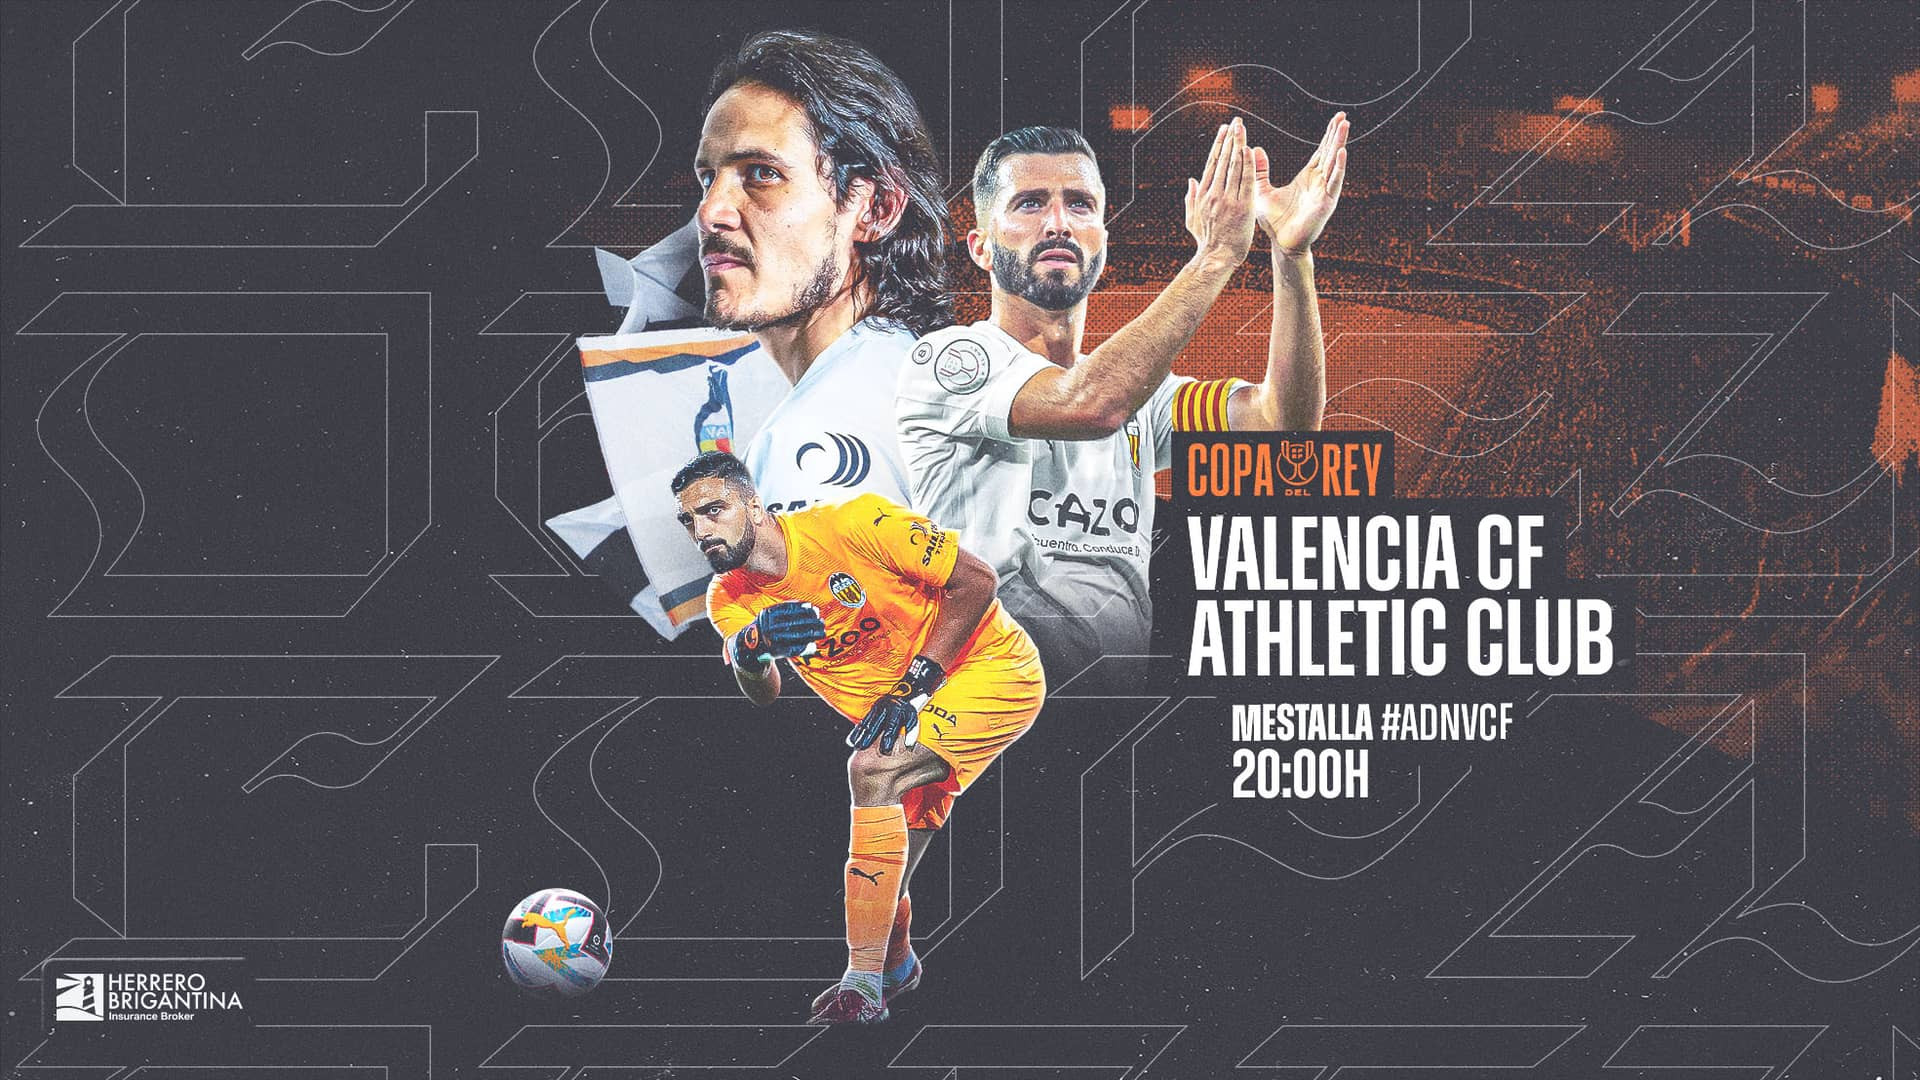 Valencia club de fútbol clasificación